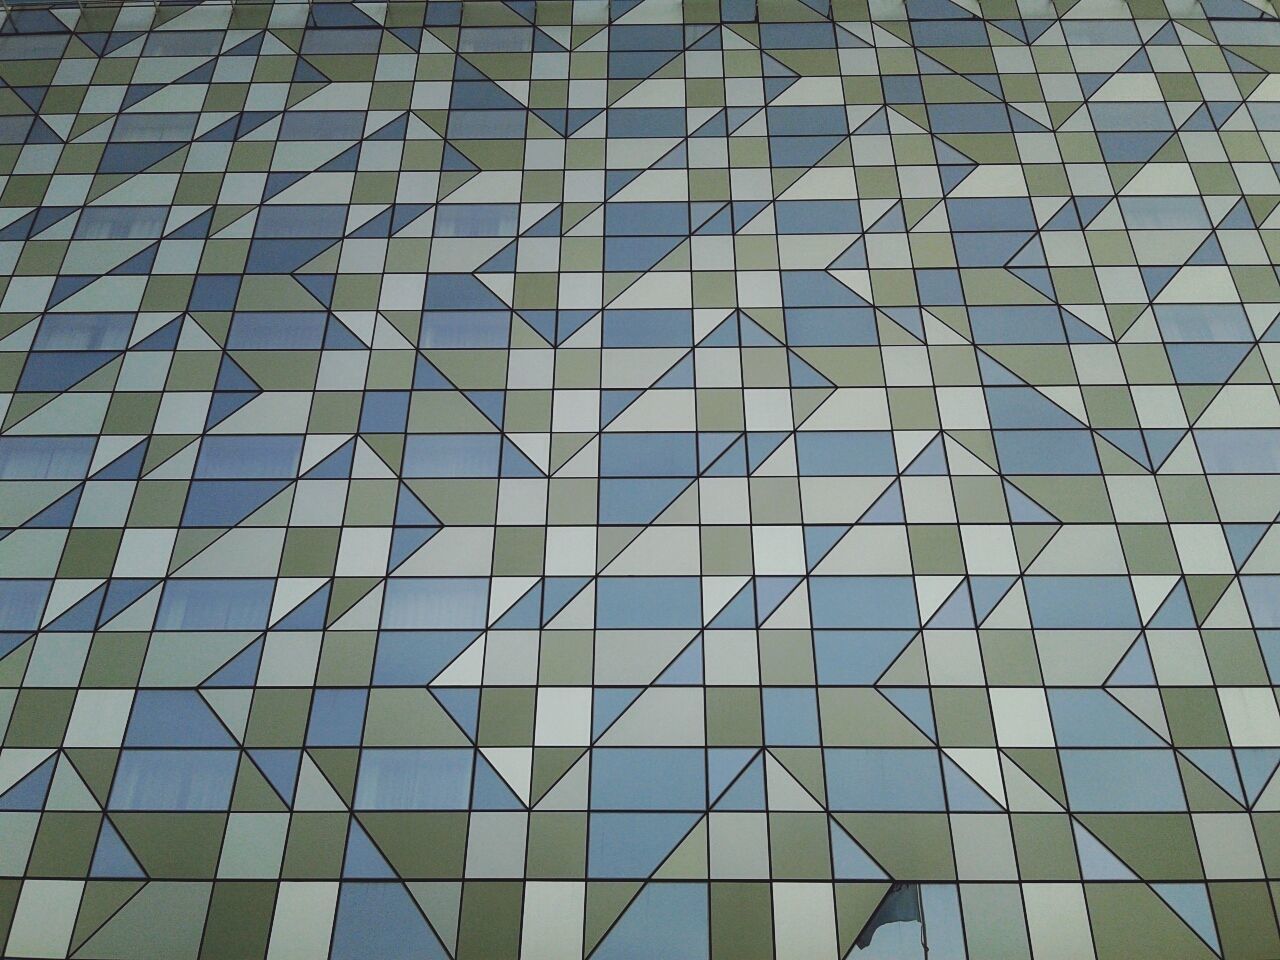 Full frame of tiled floor